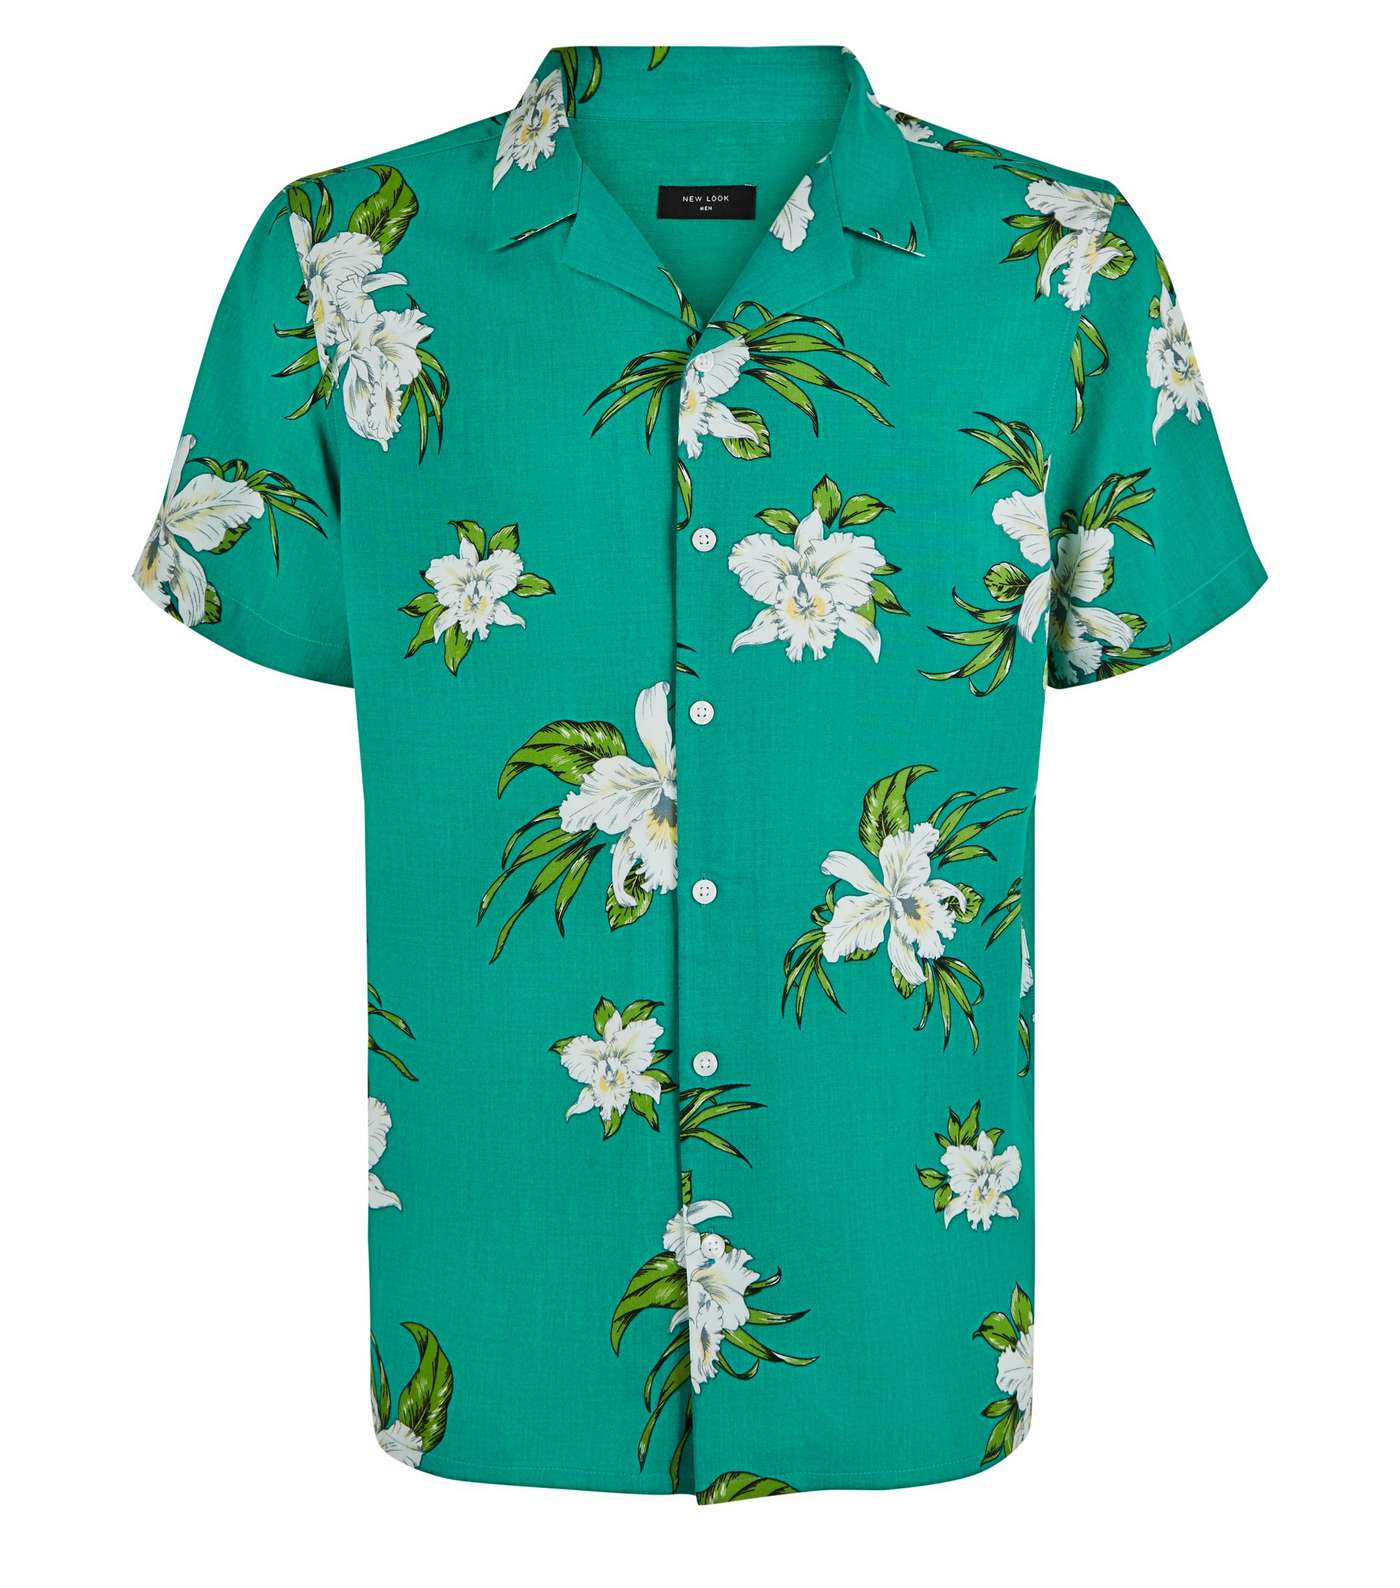 Teal Floral Short Sleeve Shirt Image 4